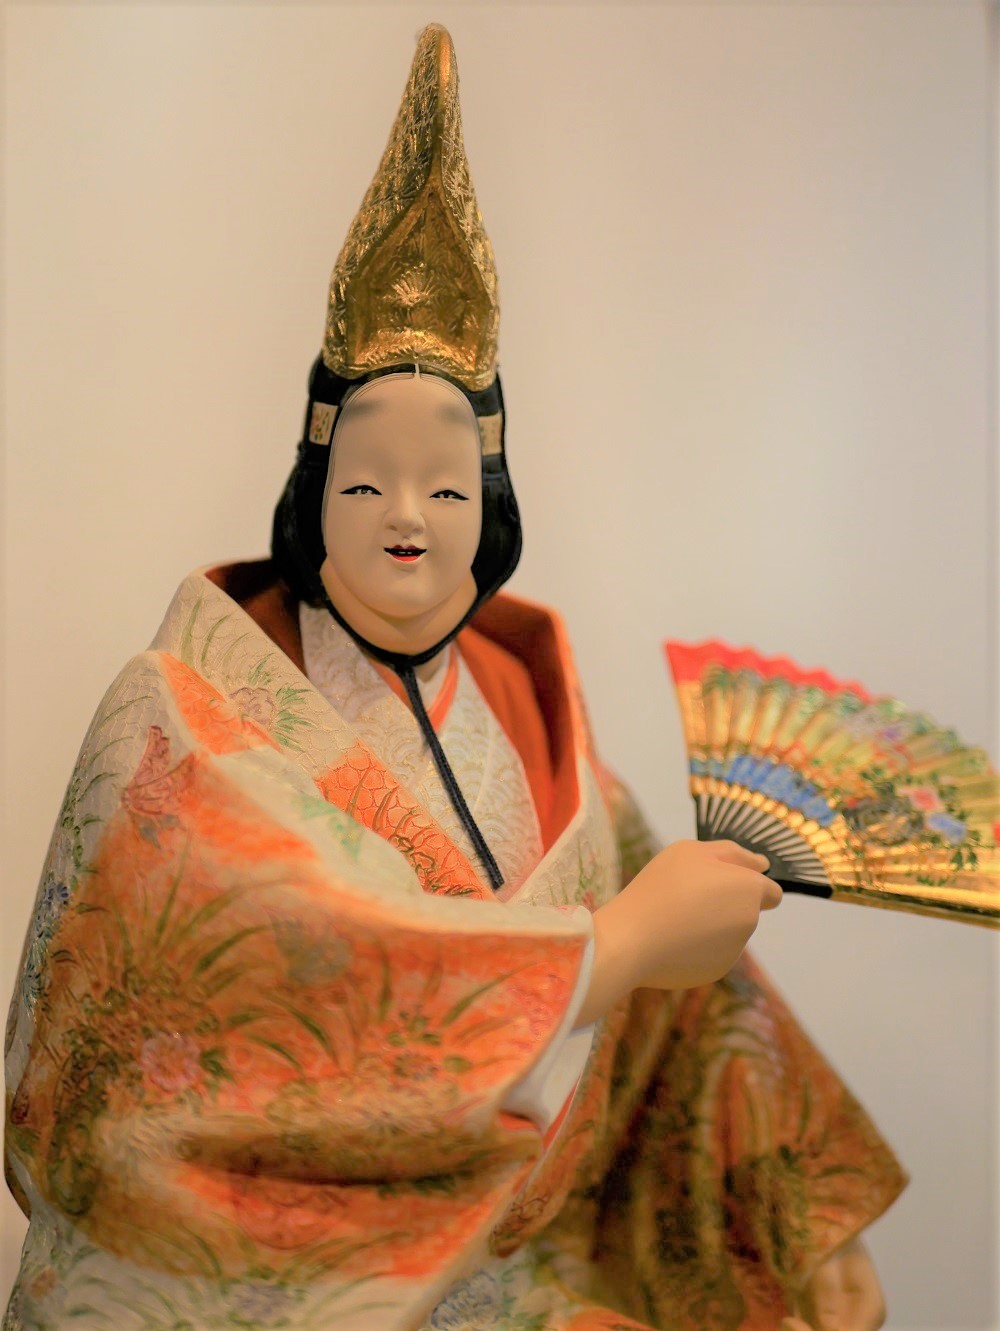 2020.6.9 【リポート】「博多人形伝統工芸士会作品展」リポートVOL.5 